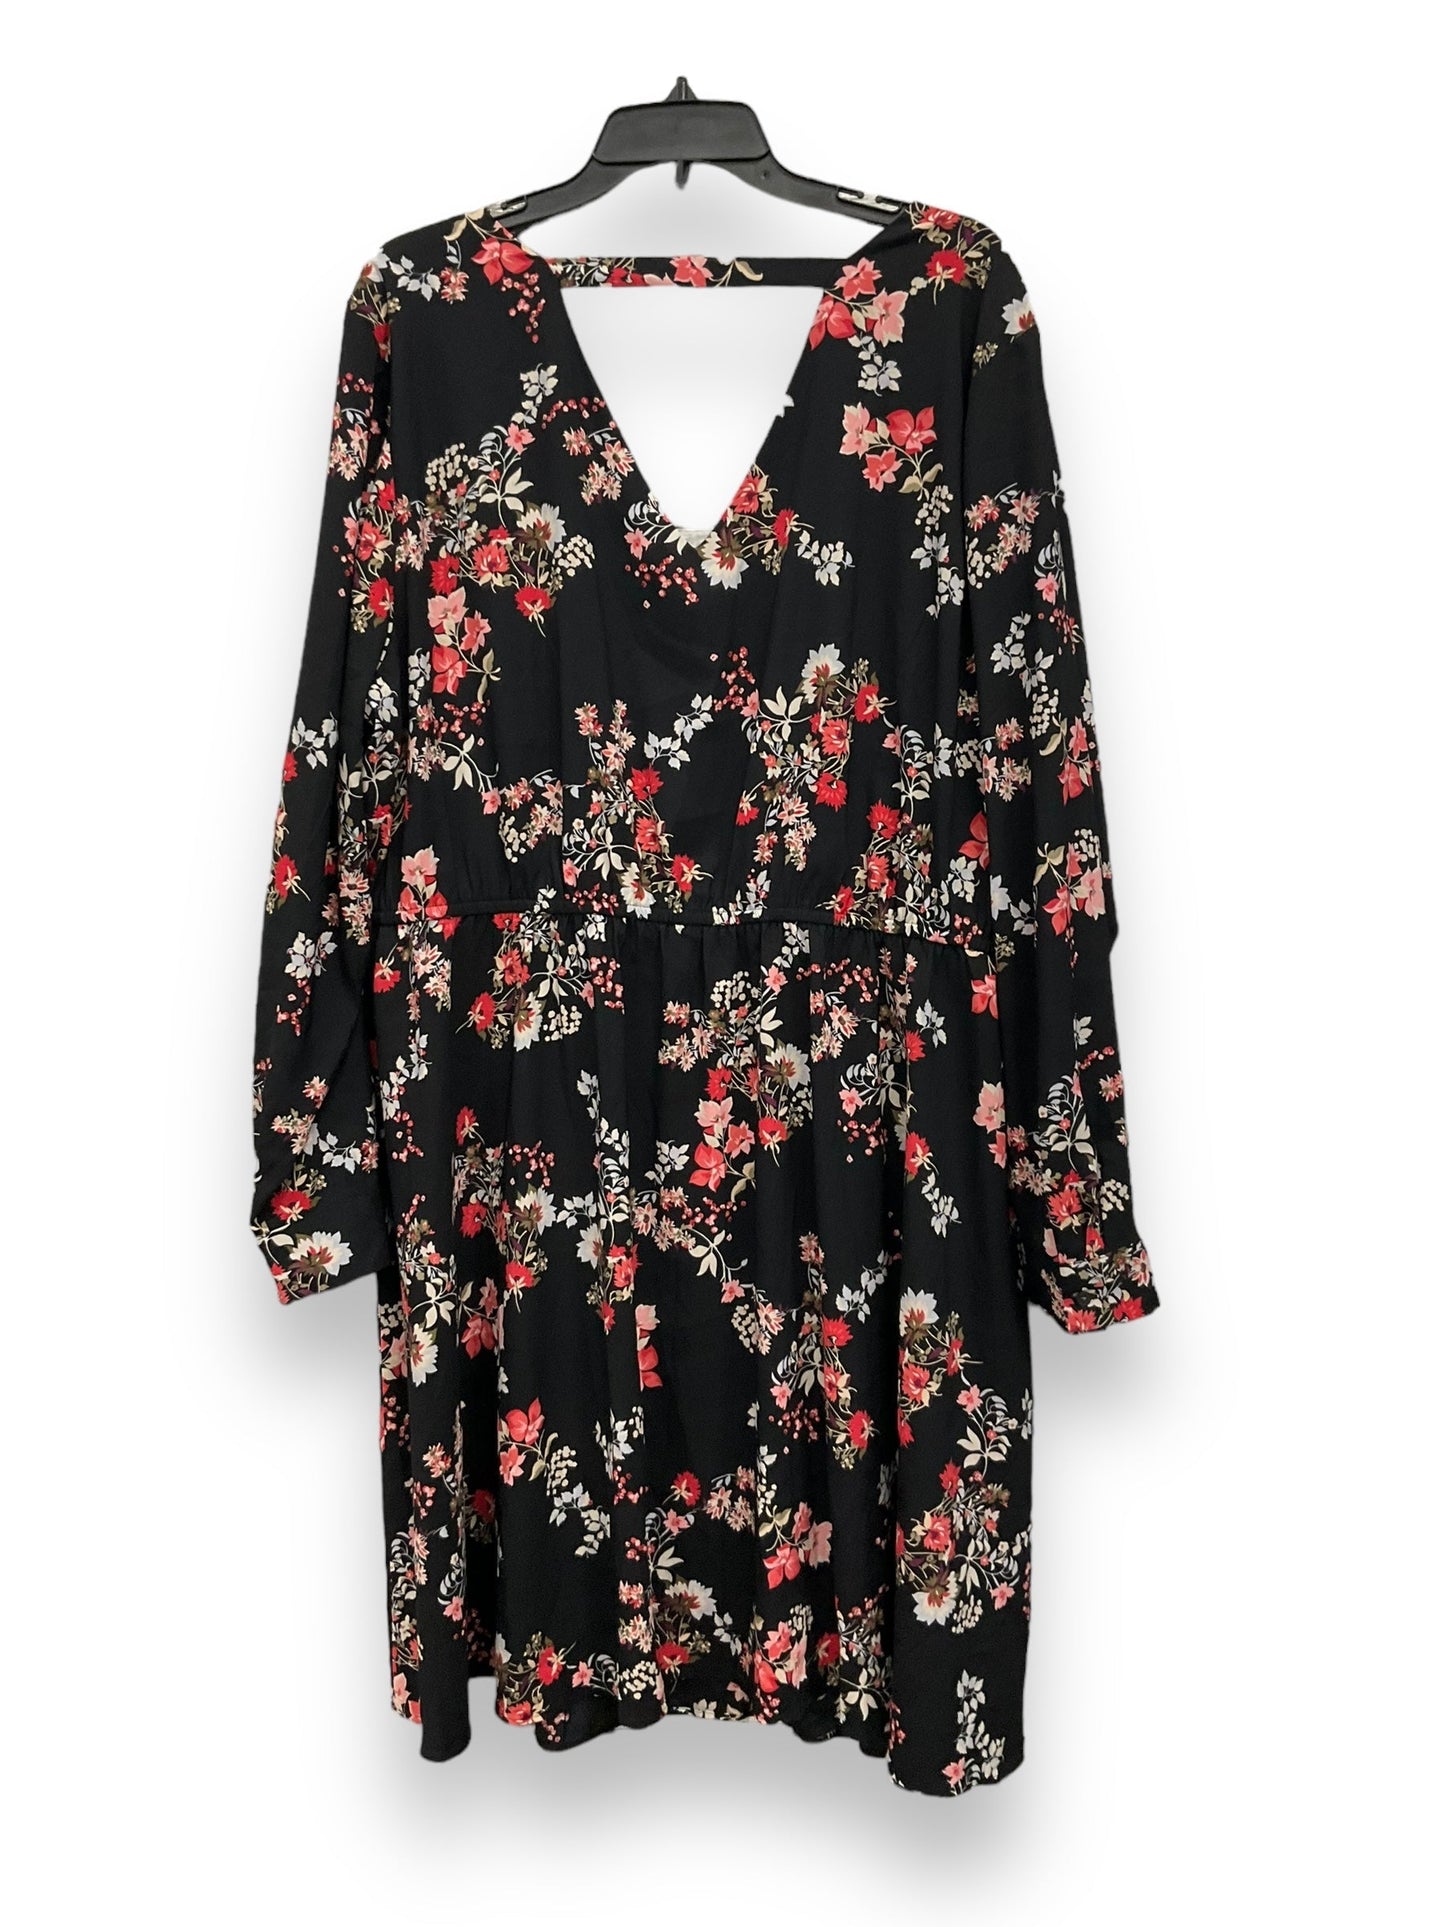 Floral Print Dress Casual Short Loft, Size 3x